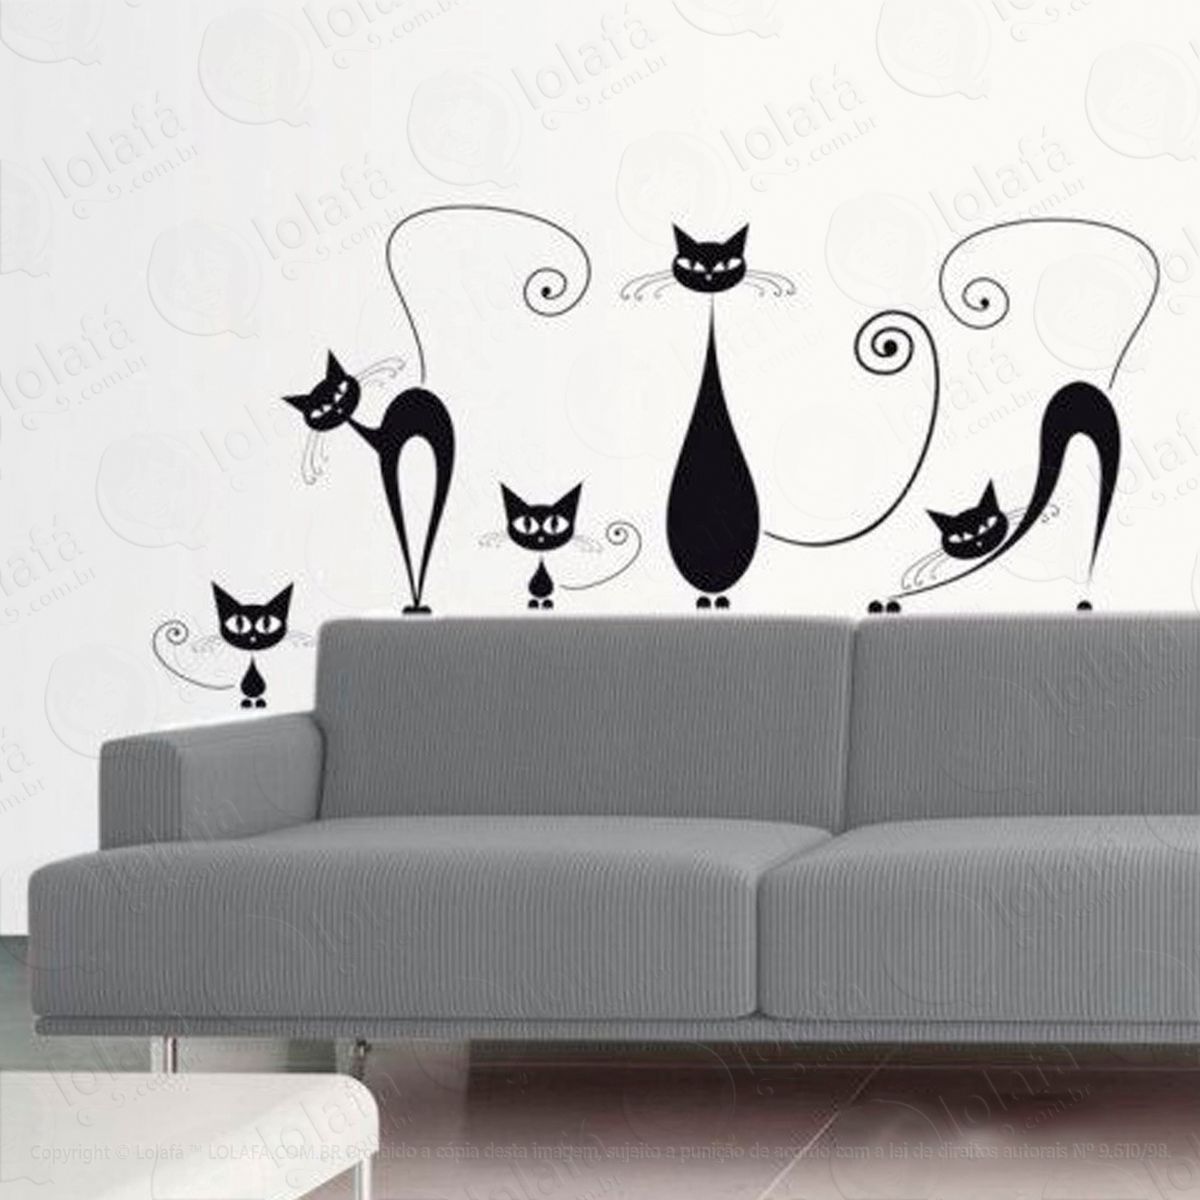 gatos curiosos adesivo de parede decorativo para casa, sala, quarto e vidro - mod:57